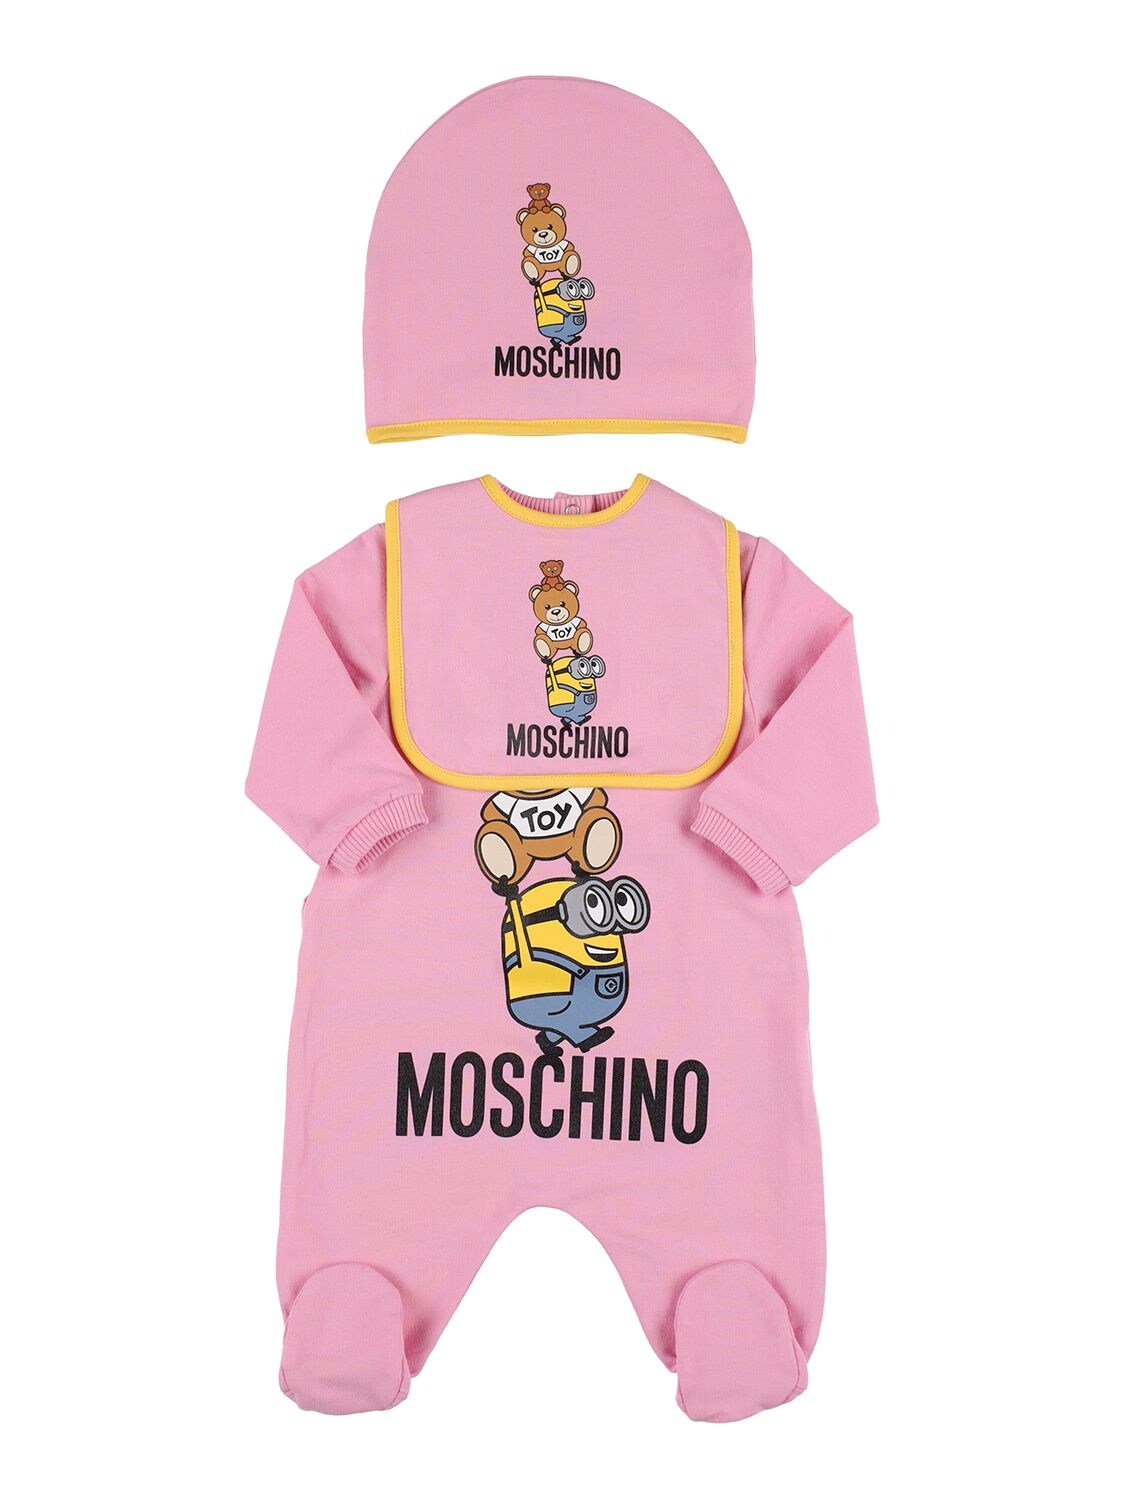 Moschino Babies' Minions Cotton Romper, Bib & Hat In Dark Pink